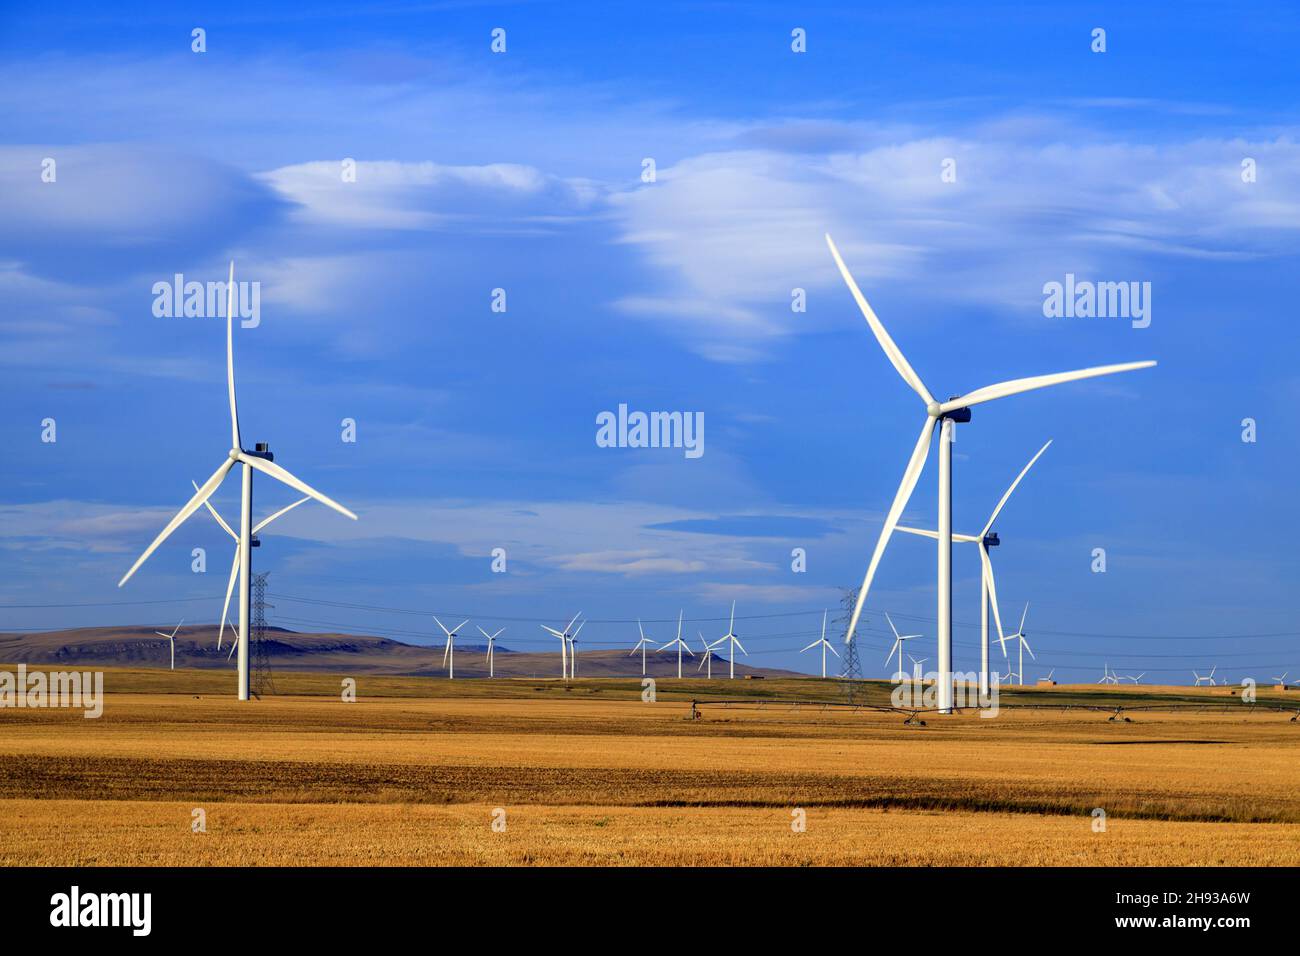 Windenergie oder Windenergie ist die Nutzung von Windenergieanlagen zur Stromerzeugung. Windenergie ist eine beliebte, nachhaltige, erneuerbare Energiequelle. Stockfoto